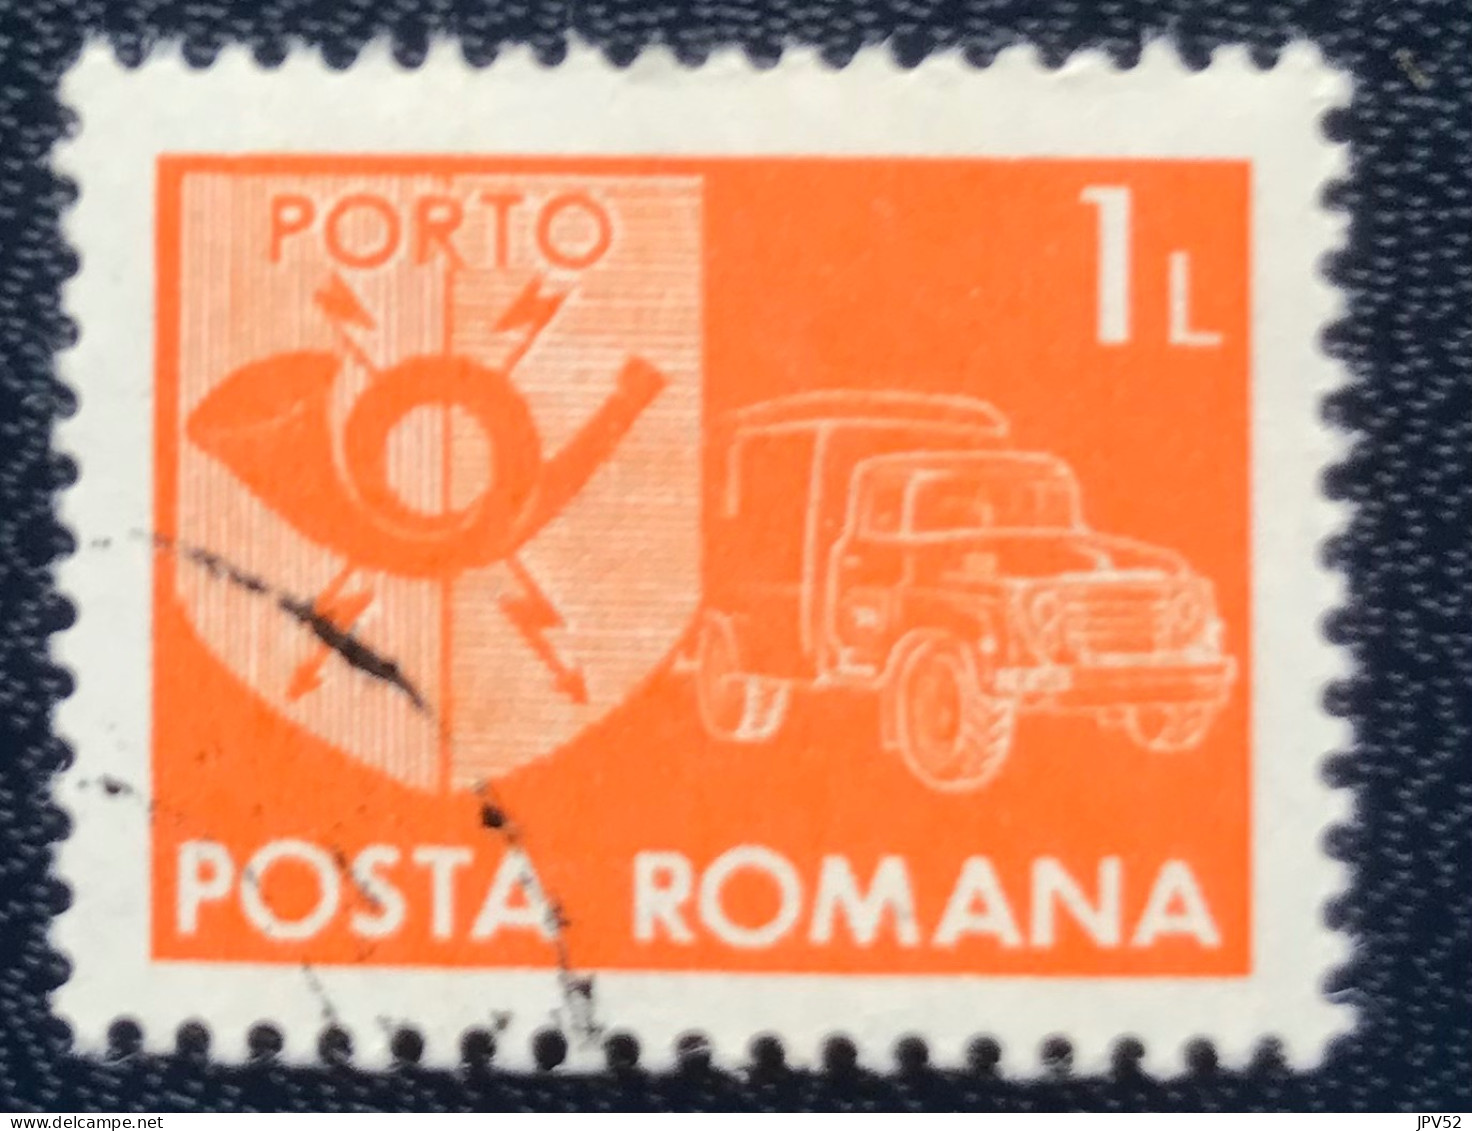 Romana - Roemenië - C14/54 - 1974 - (°)used - Michel 124 - Postembleem & Postvoertuig - Postage Due